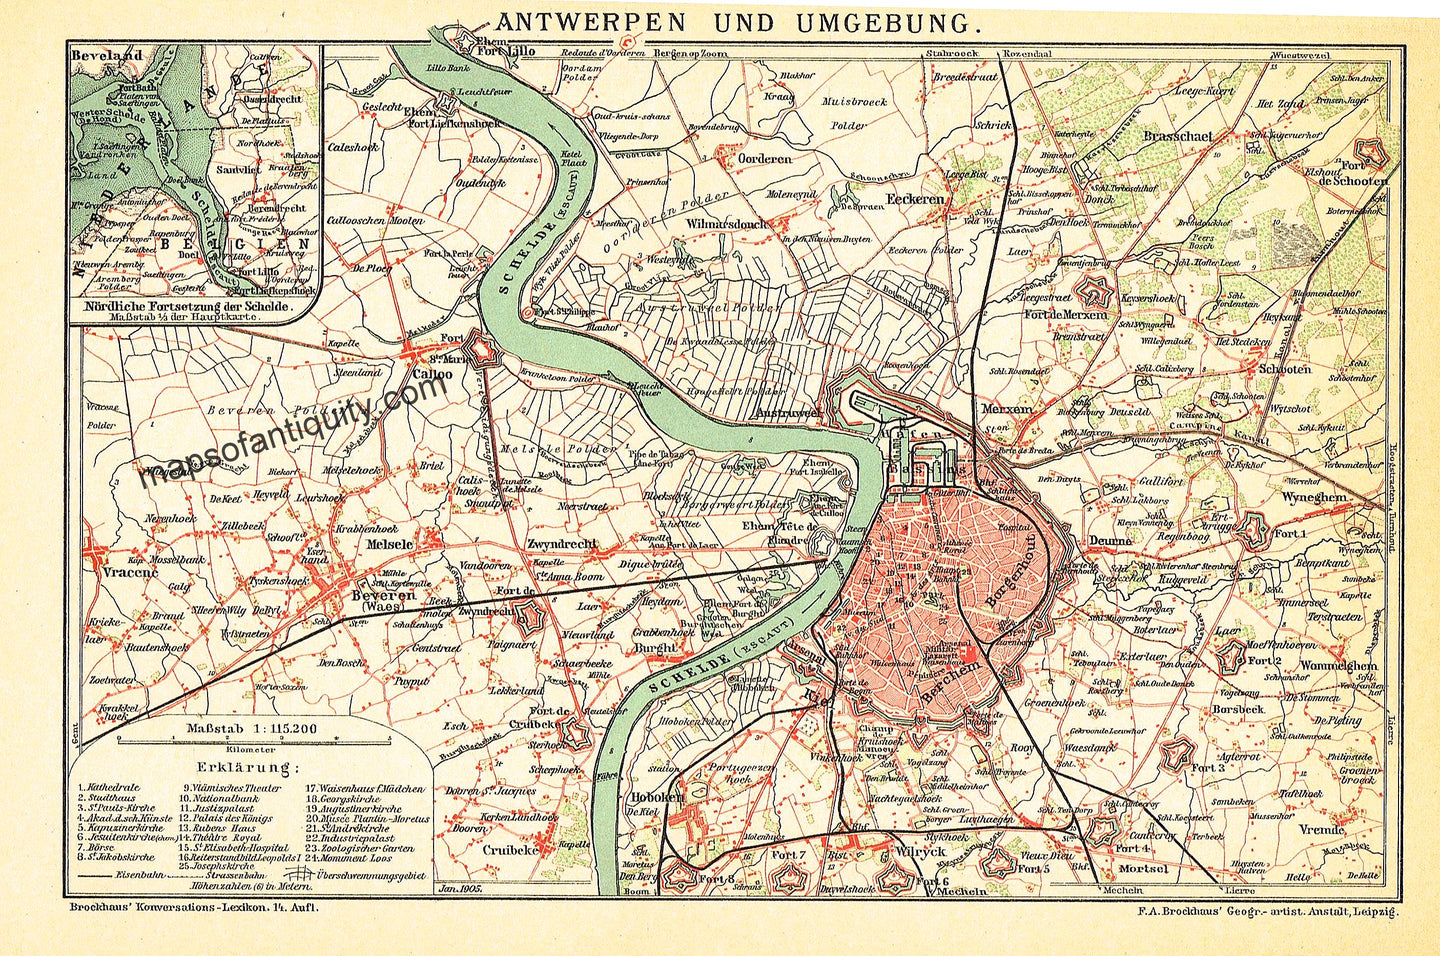 Antique-colored-map-Antwerp-und-Umbegung-Belgium-Europe-Belgium-1905-Brockhaus-Maps-Of-Antiquity